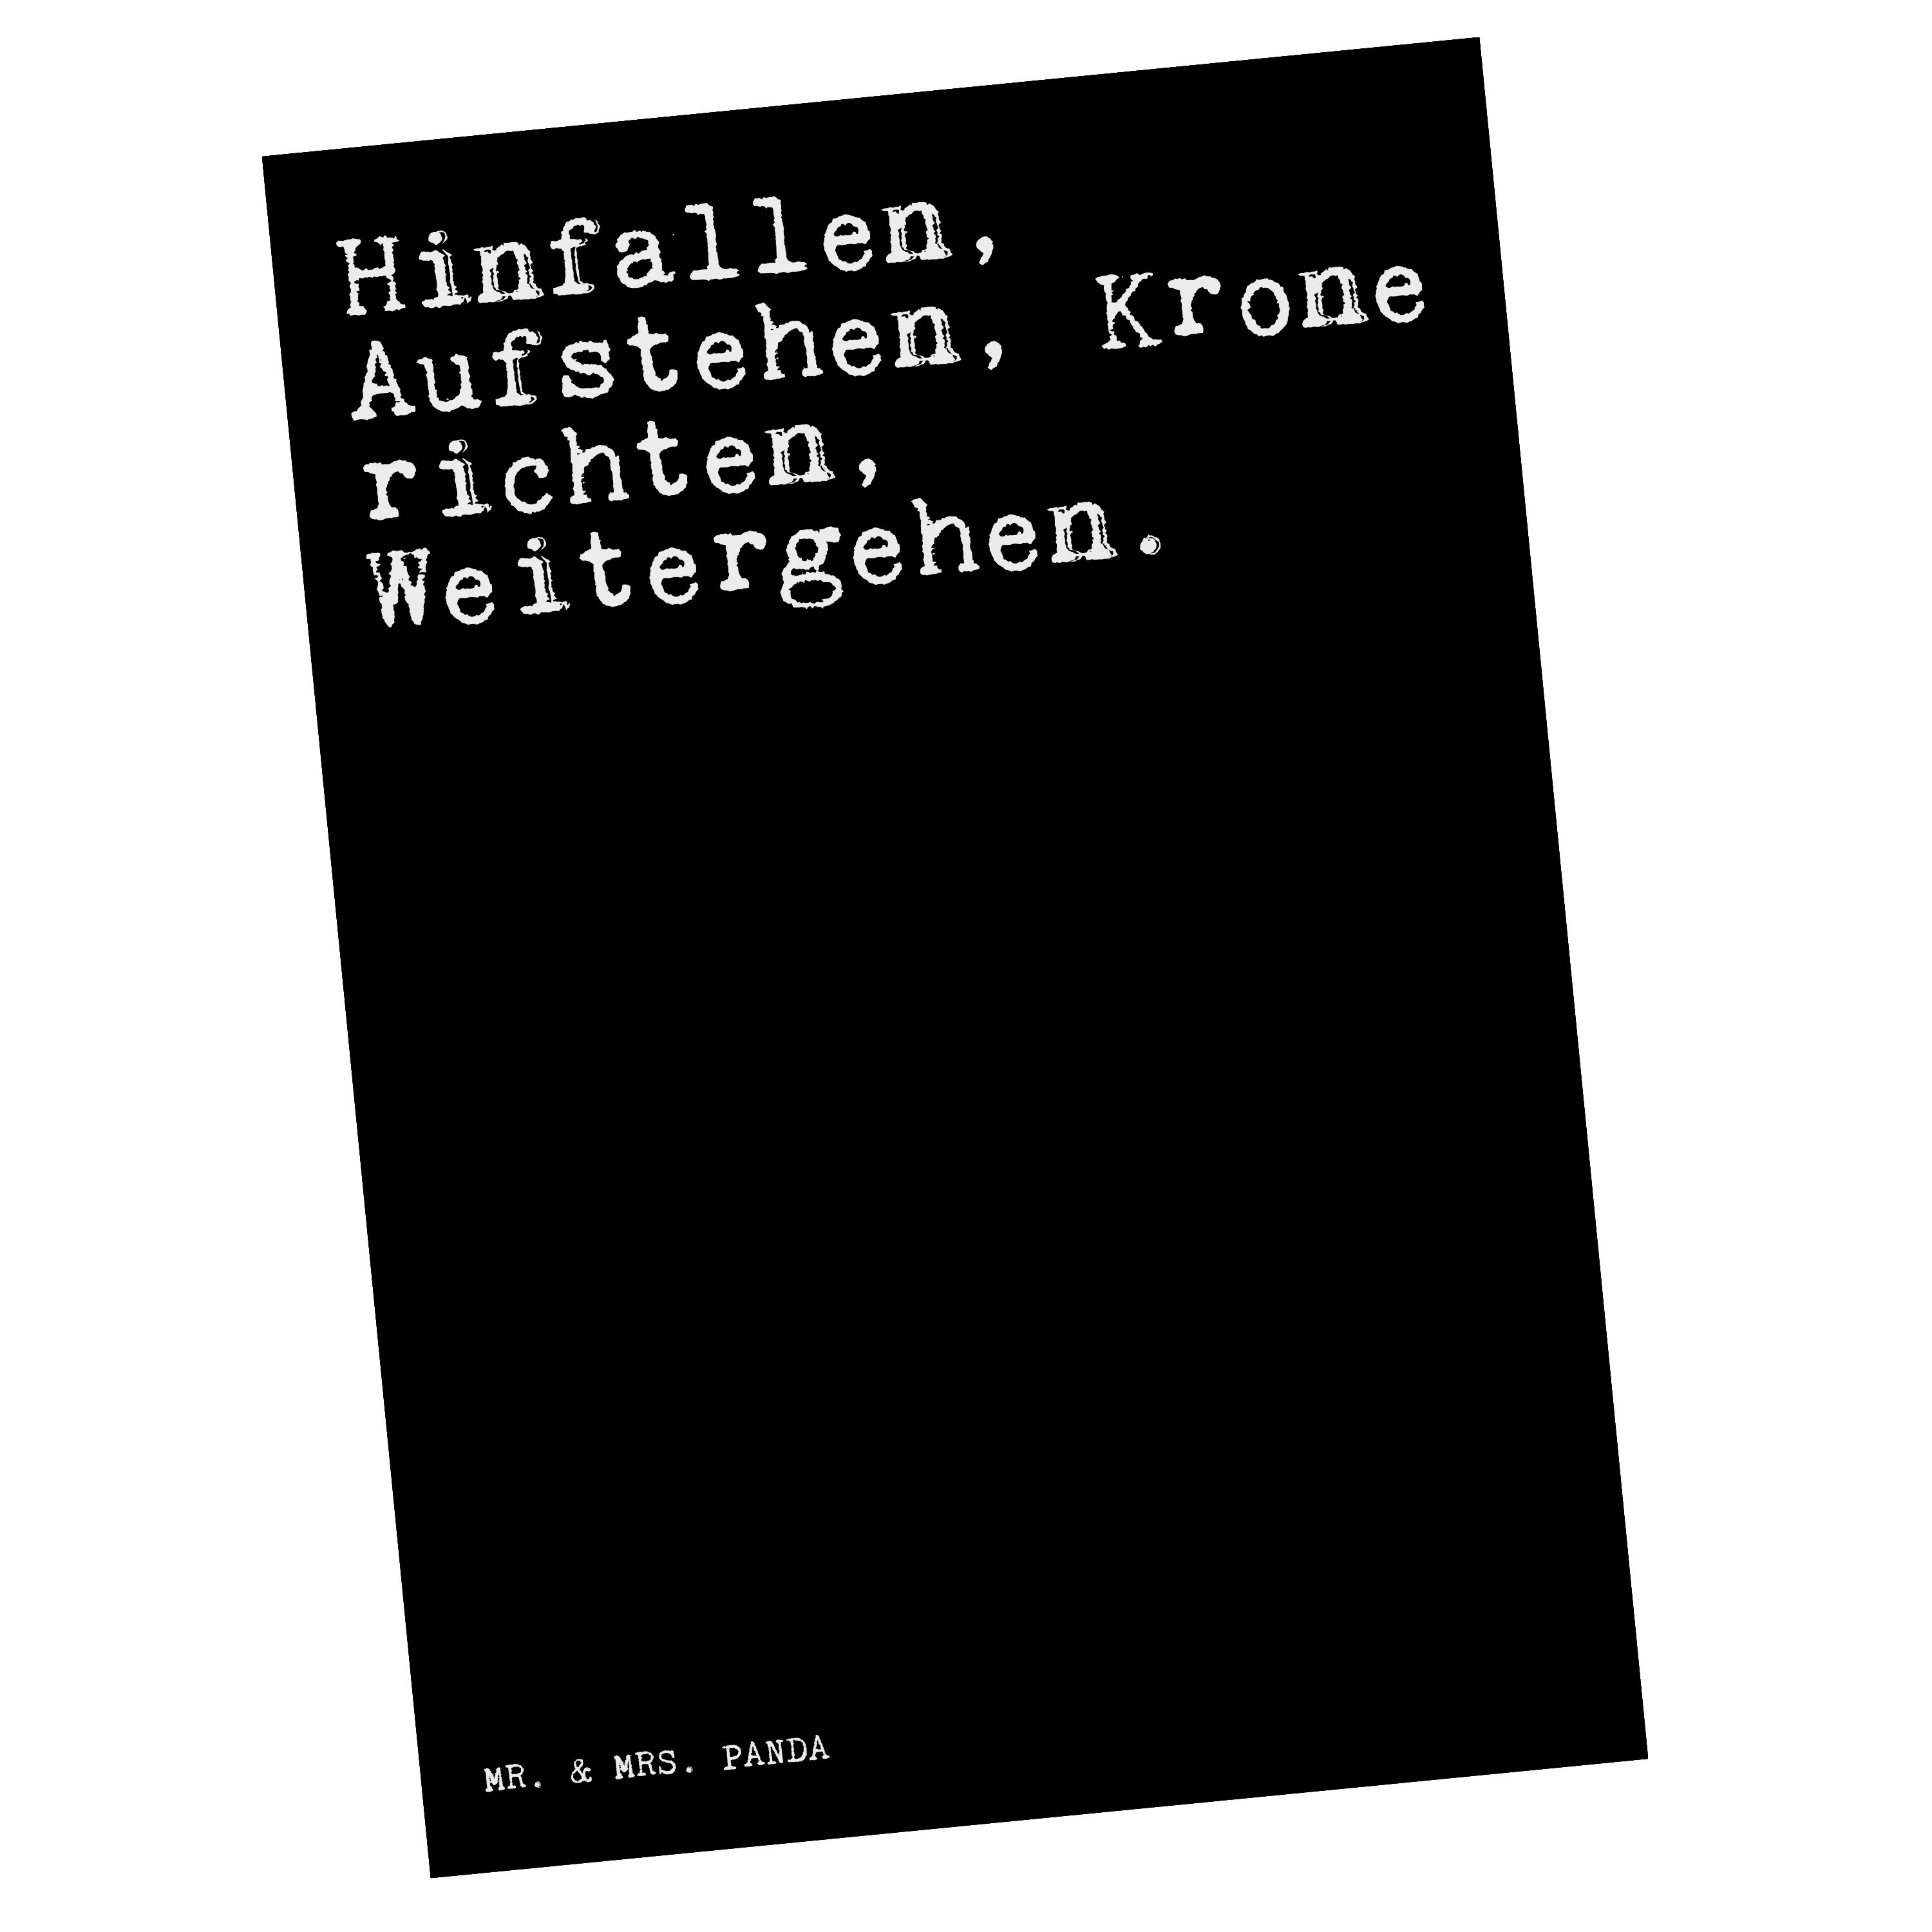 Postkarte - Mr. Aufstehen, richten,... - Krone Geschenk, Hinfallen, Mrs. Frauen & Panda Schwarz